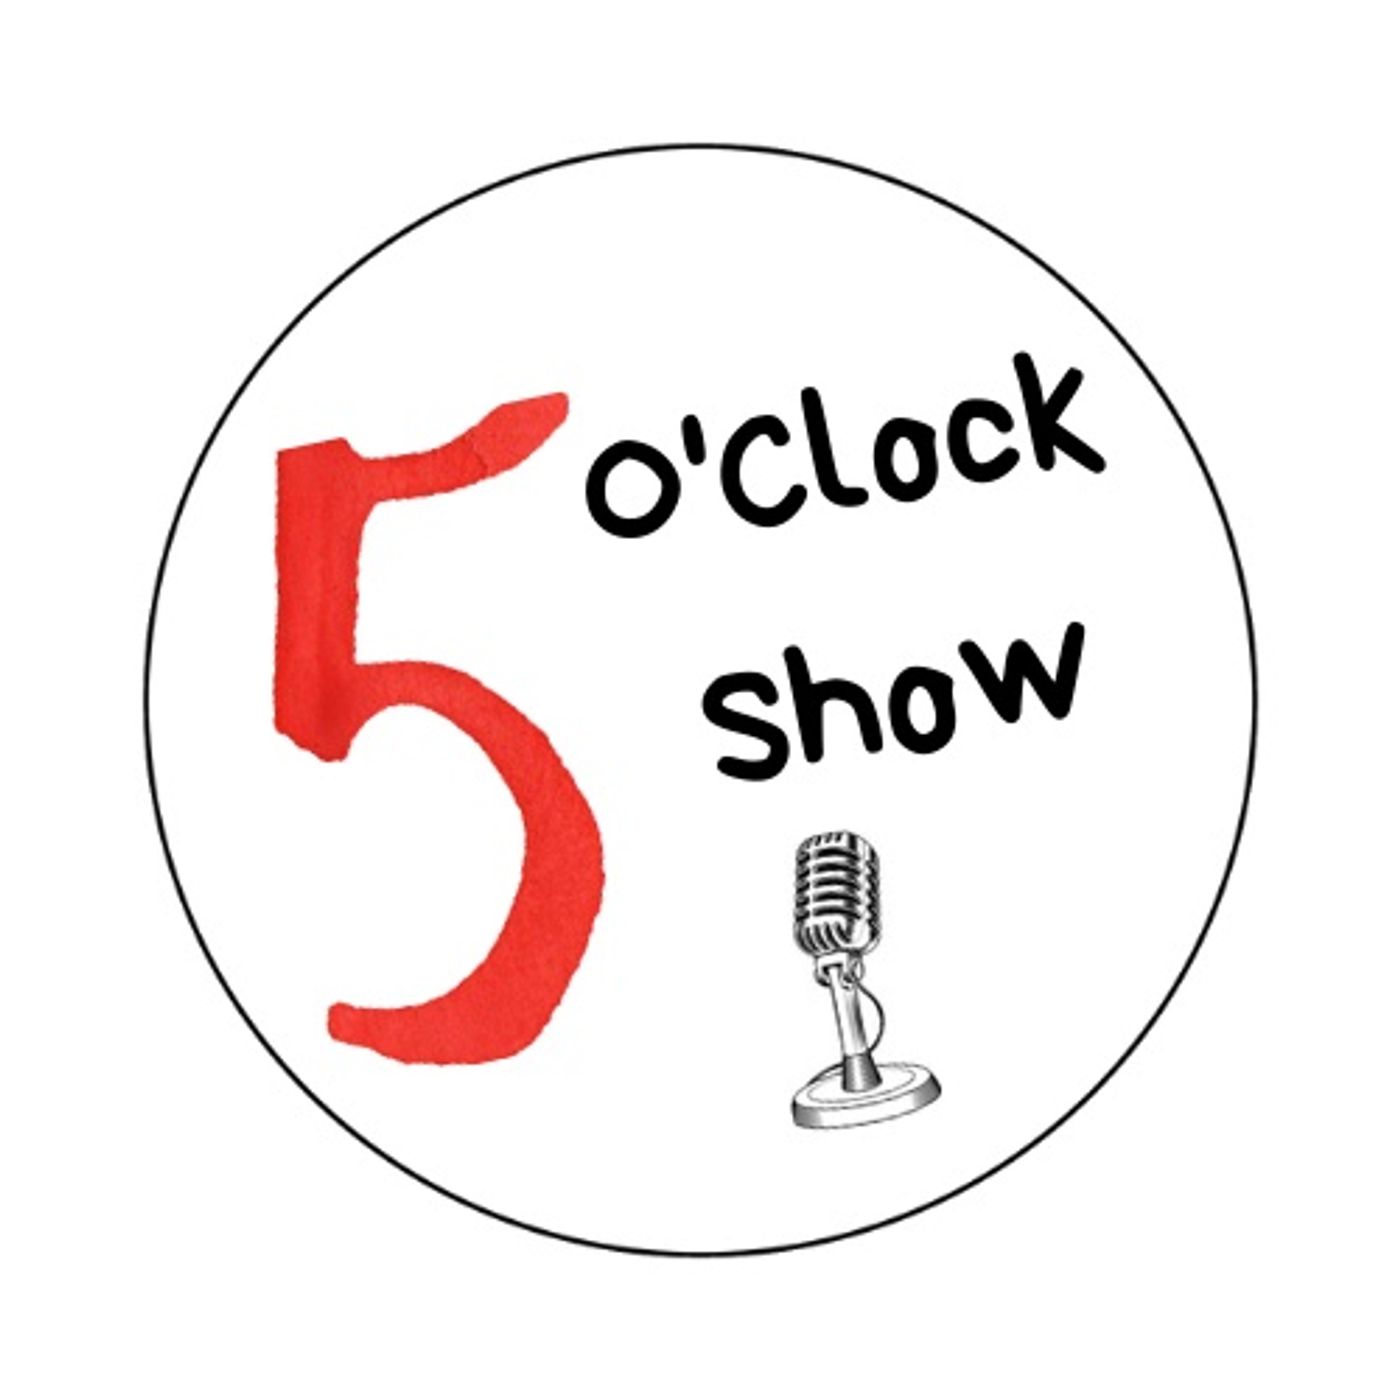 The 5 O’Clock Show